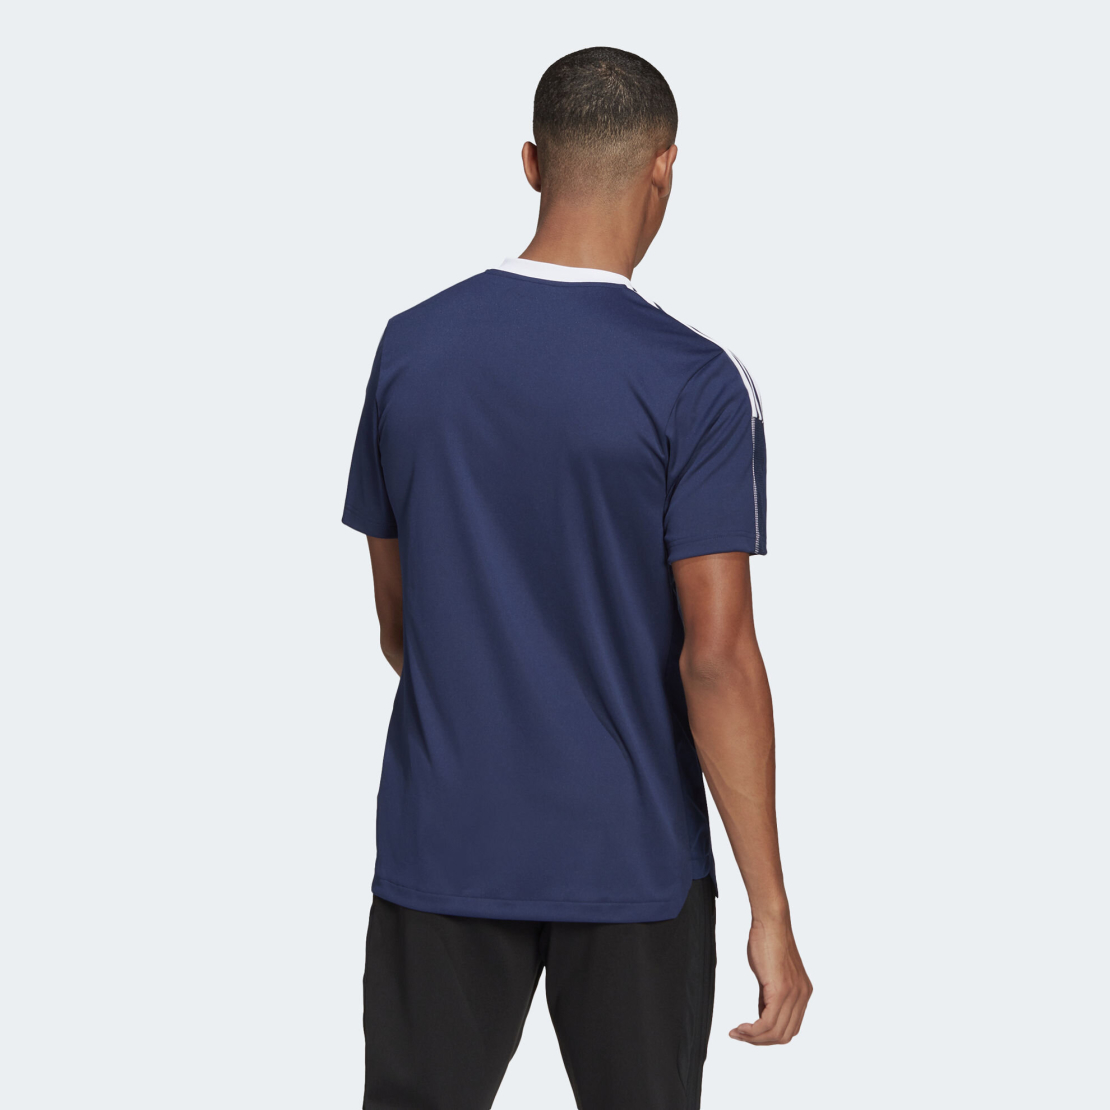 חולצת אדידס לגבר | Adidas Tiro 21 Jeresy